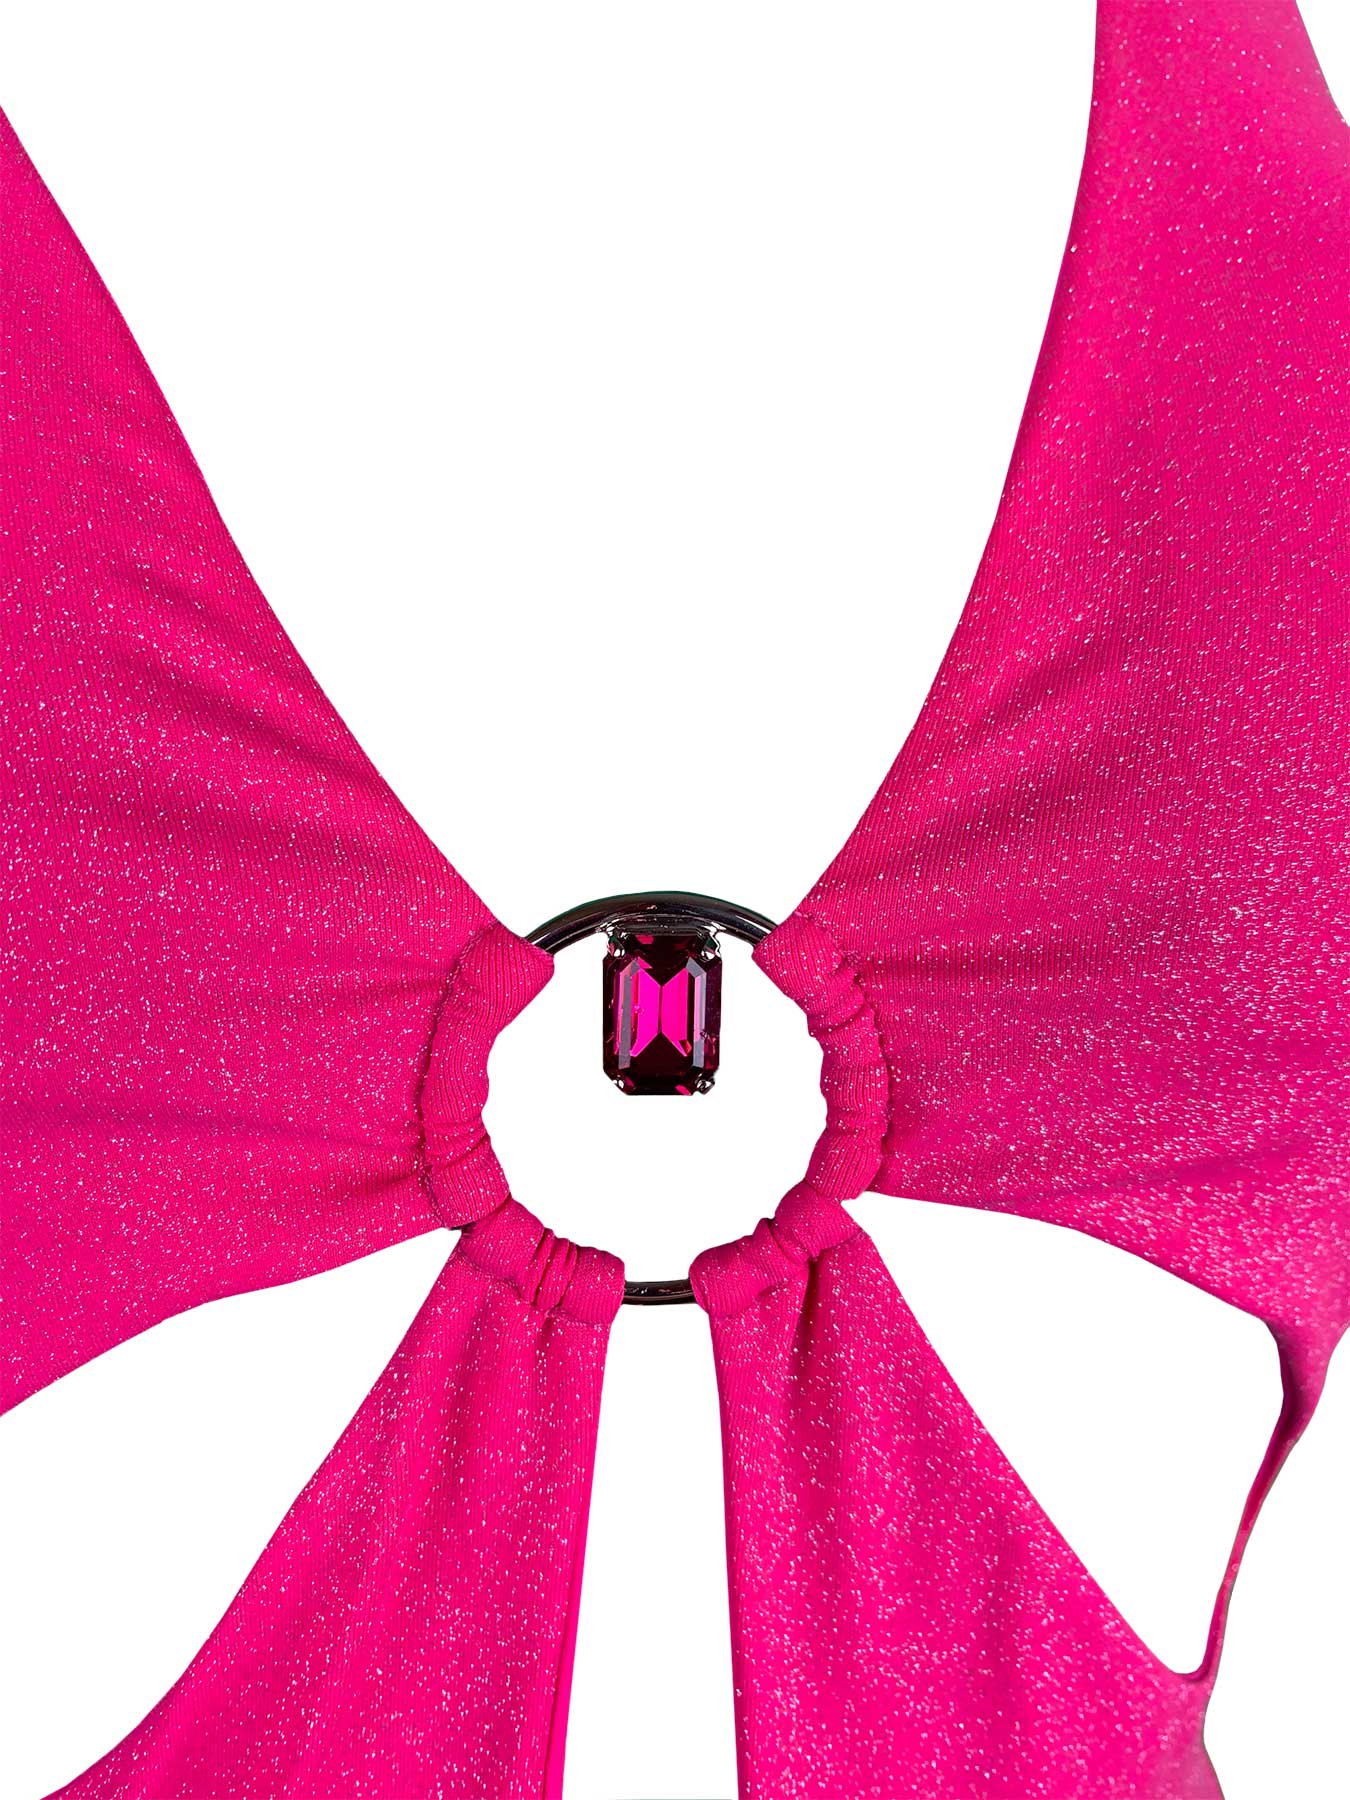 Intero Intaglio Fiore Polvere Di Stelle Rosa Genius - Bikini D'amare Riccione